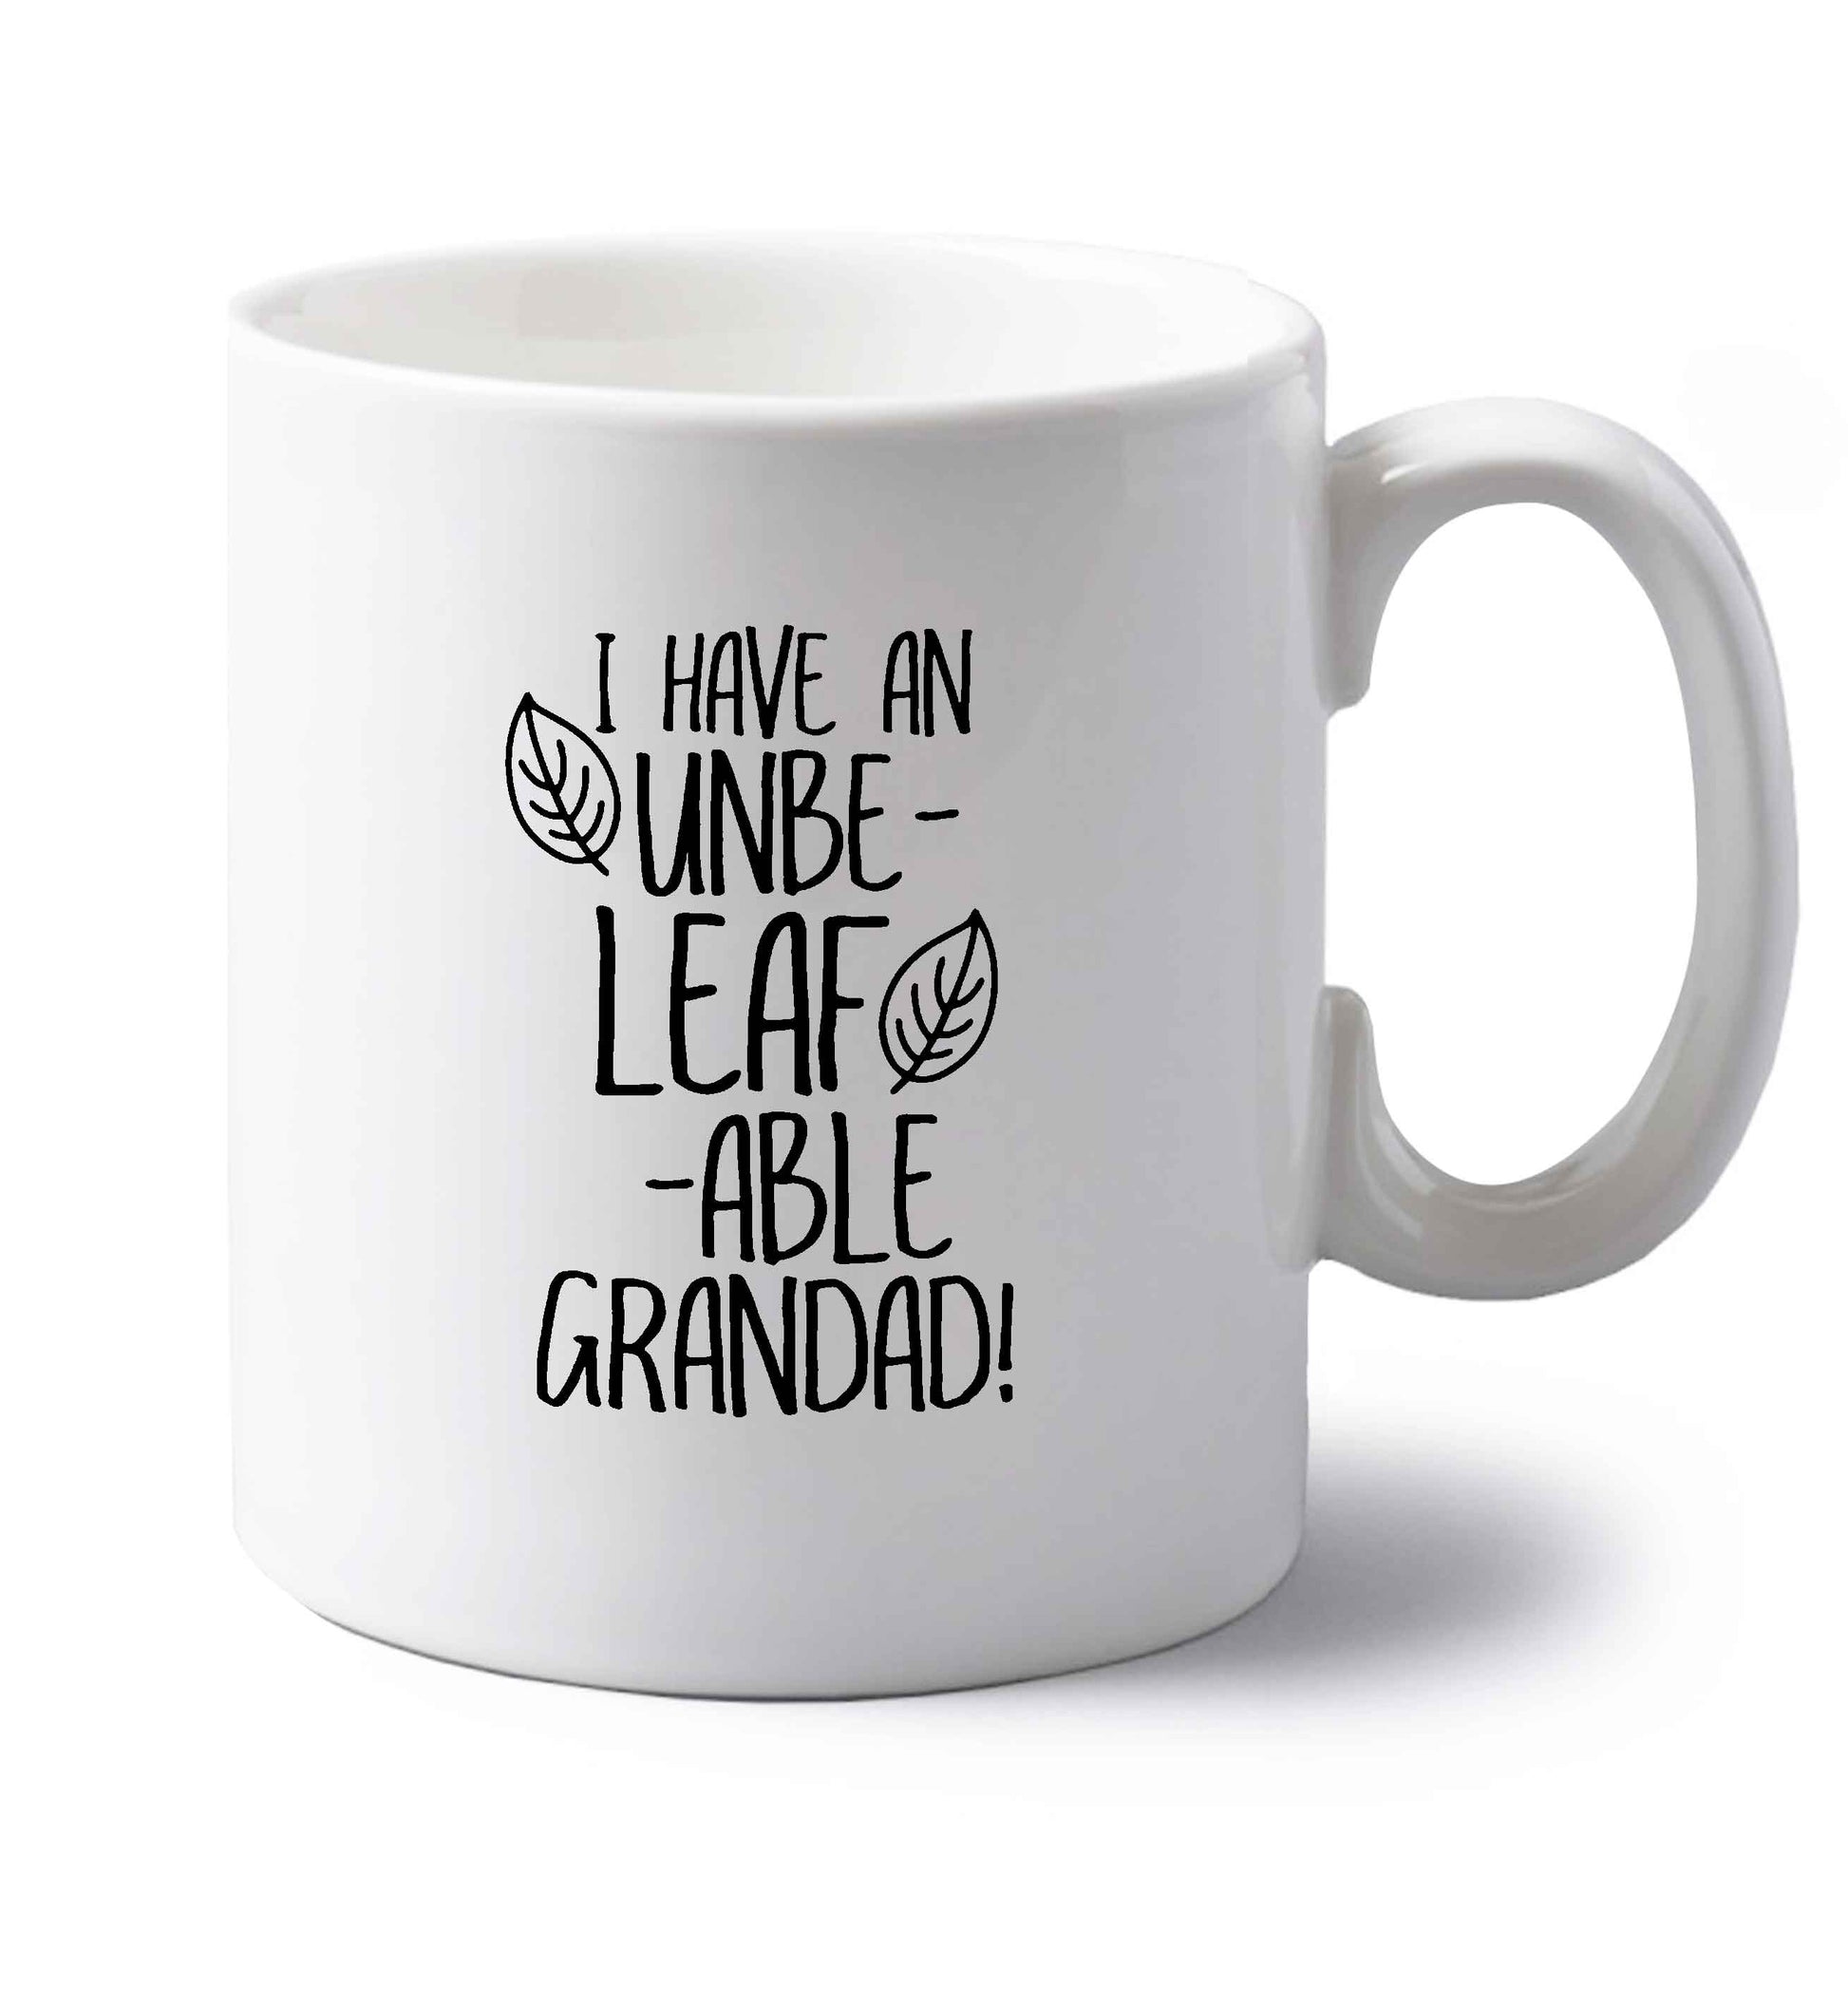 I have an unbe-leaf-able grandad left handed white ceramic mug 